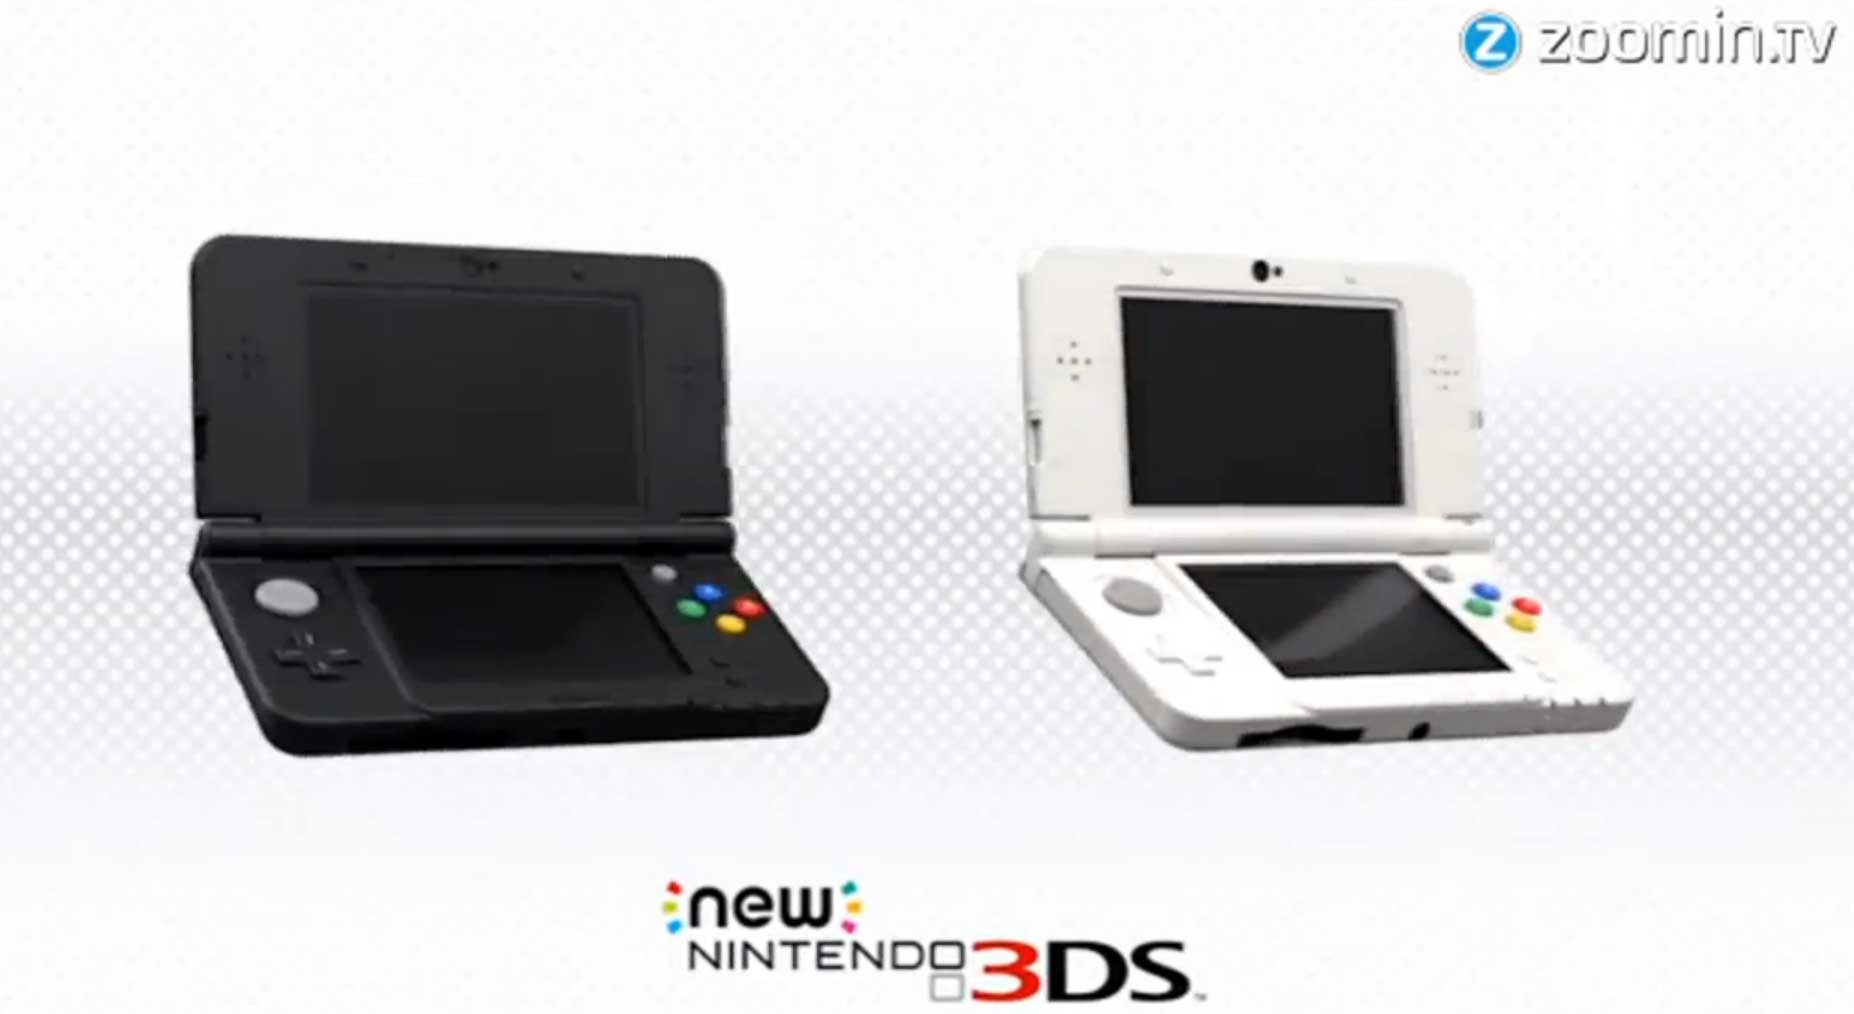 New Nintendo 3DS: Alles zur überarbeiteten Handheld-Konsole - Bildquelle: zoomin.tv / Nintendo